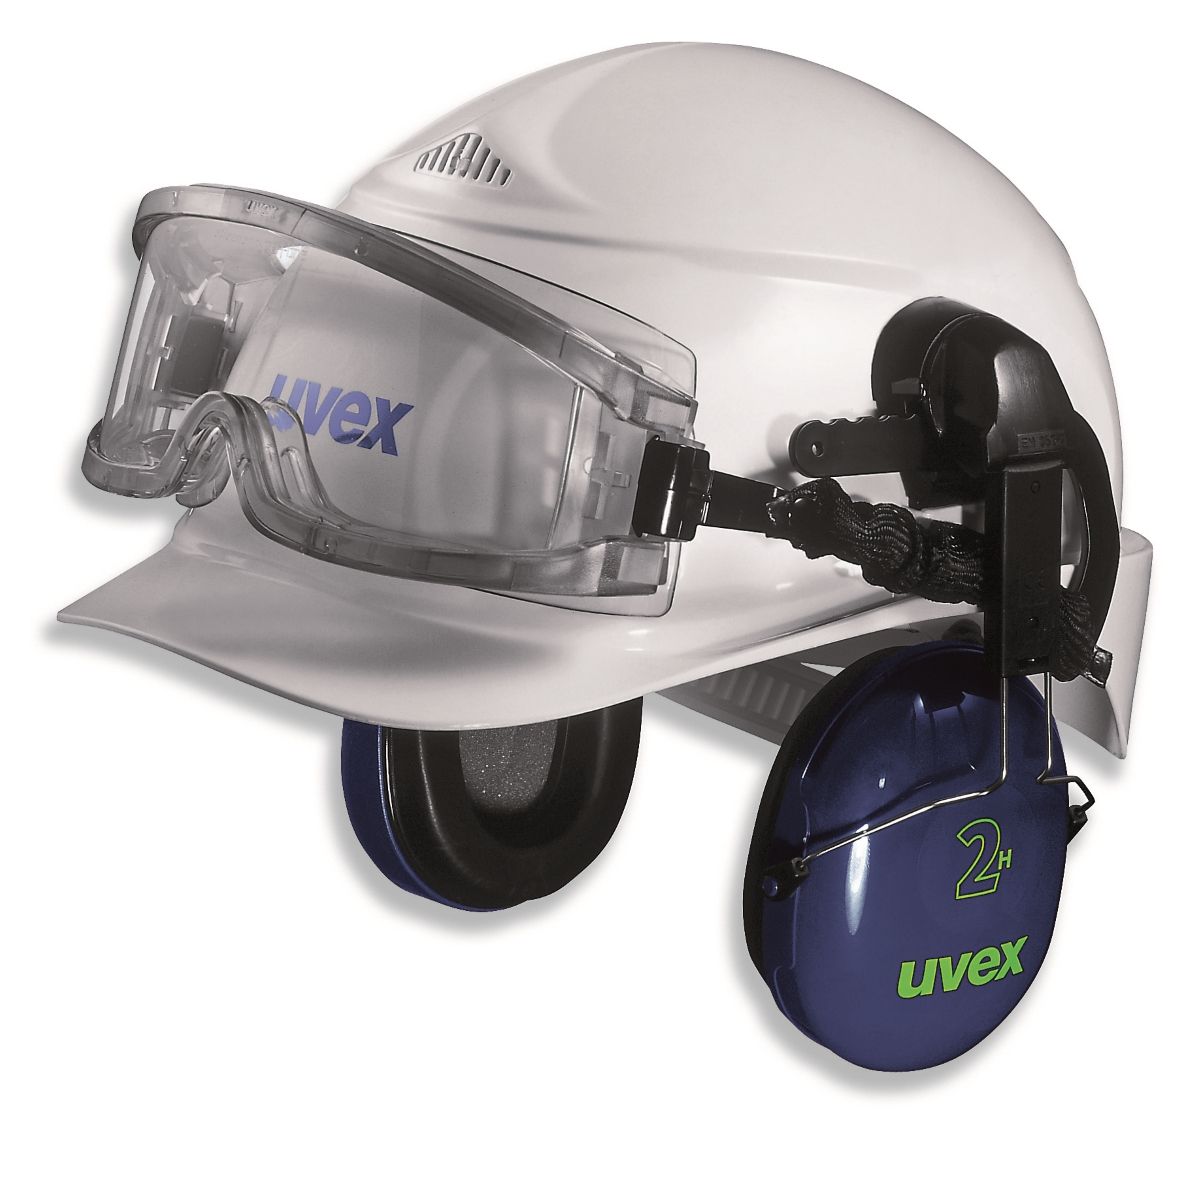 Uvex Vollsichtbrille mit Helmhalterung, grau/transparent, Beschichtung: CA farblos, beschlagfrei